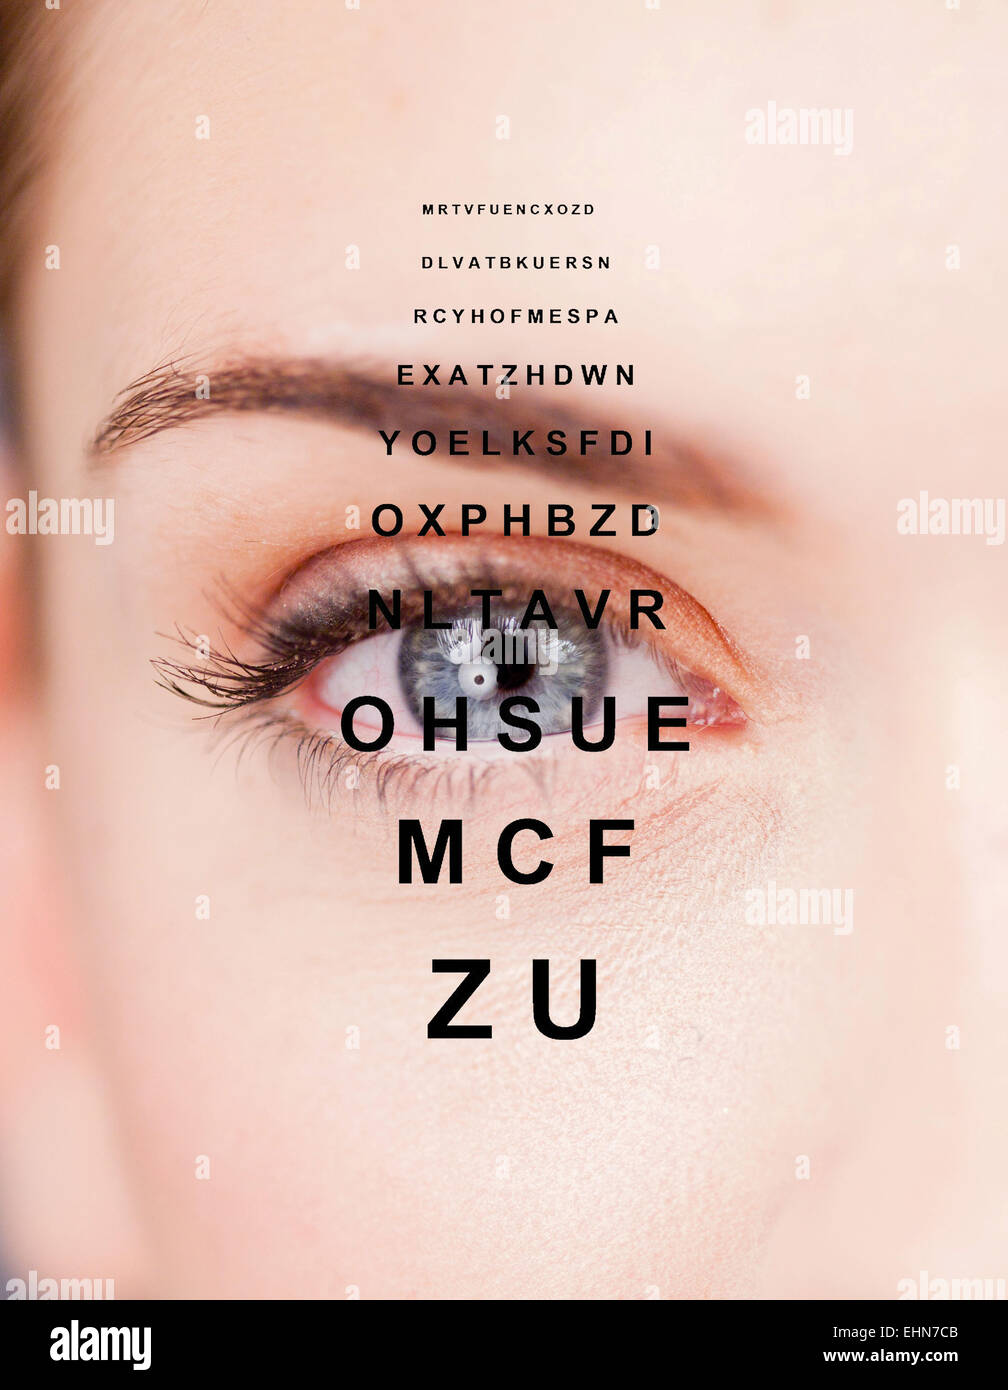 Imagen compuesta de un ojo femenino y un gráfico típico usado en exámenes del ojo. Foto de stock